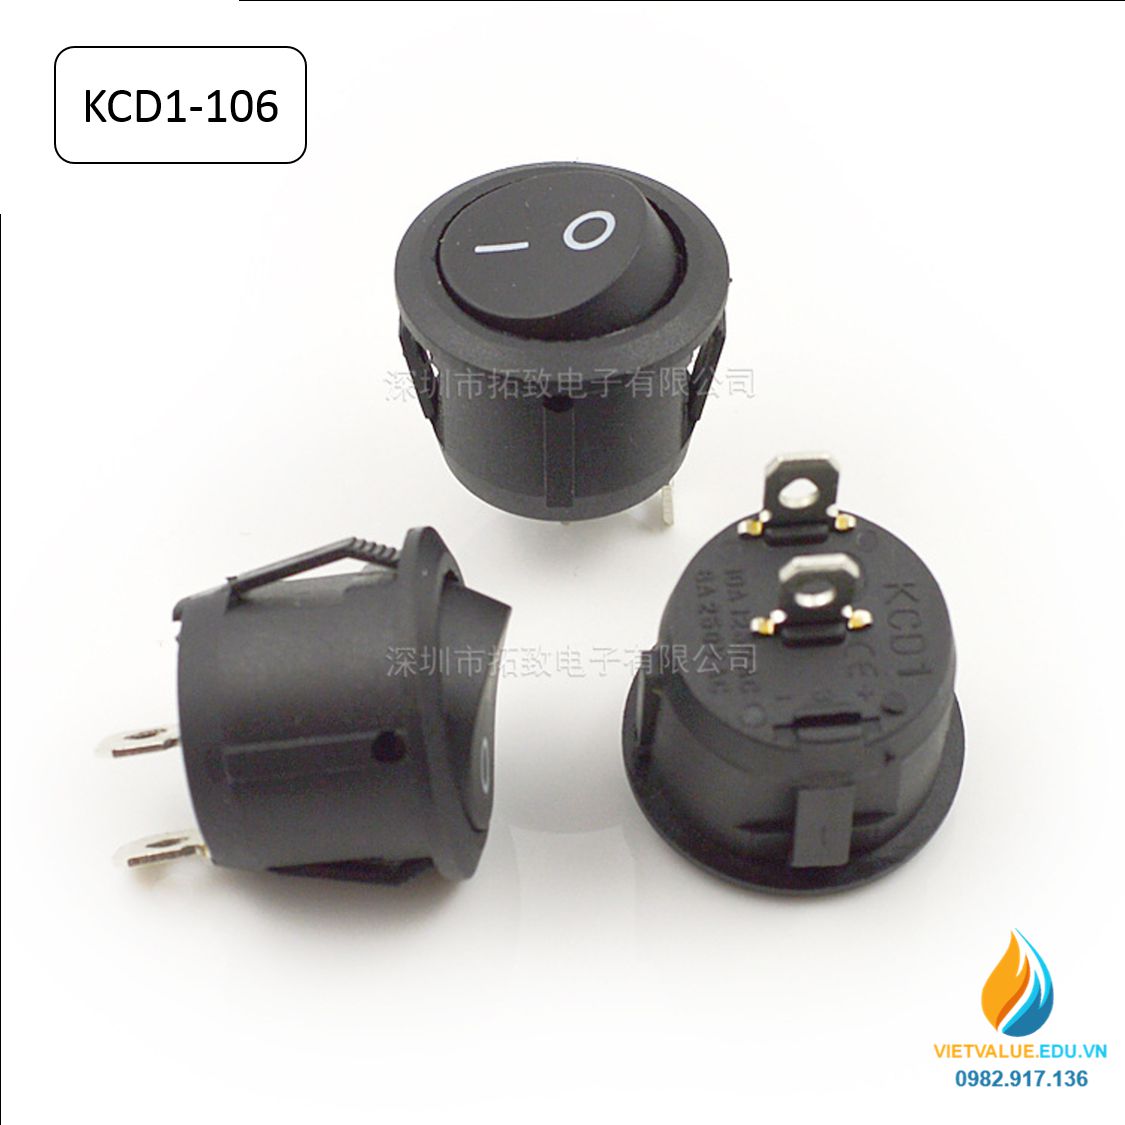 Công tắc Rocker tròn KCD1-106 hai chân cắm, thông số  6A, điện áp 250V  dạng tròn